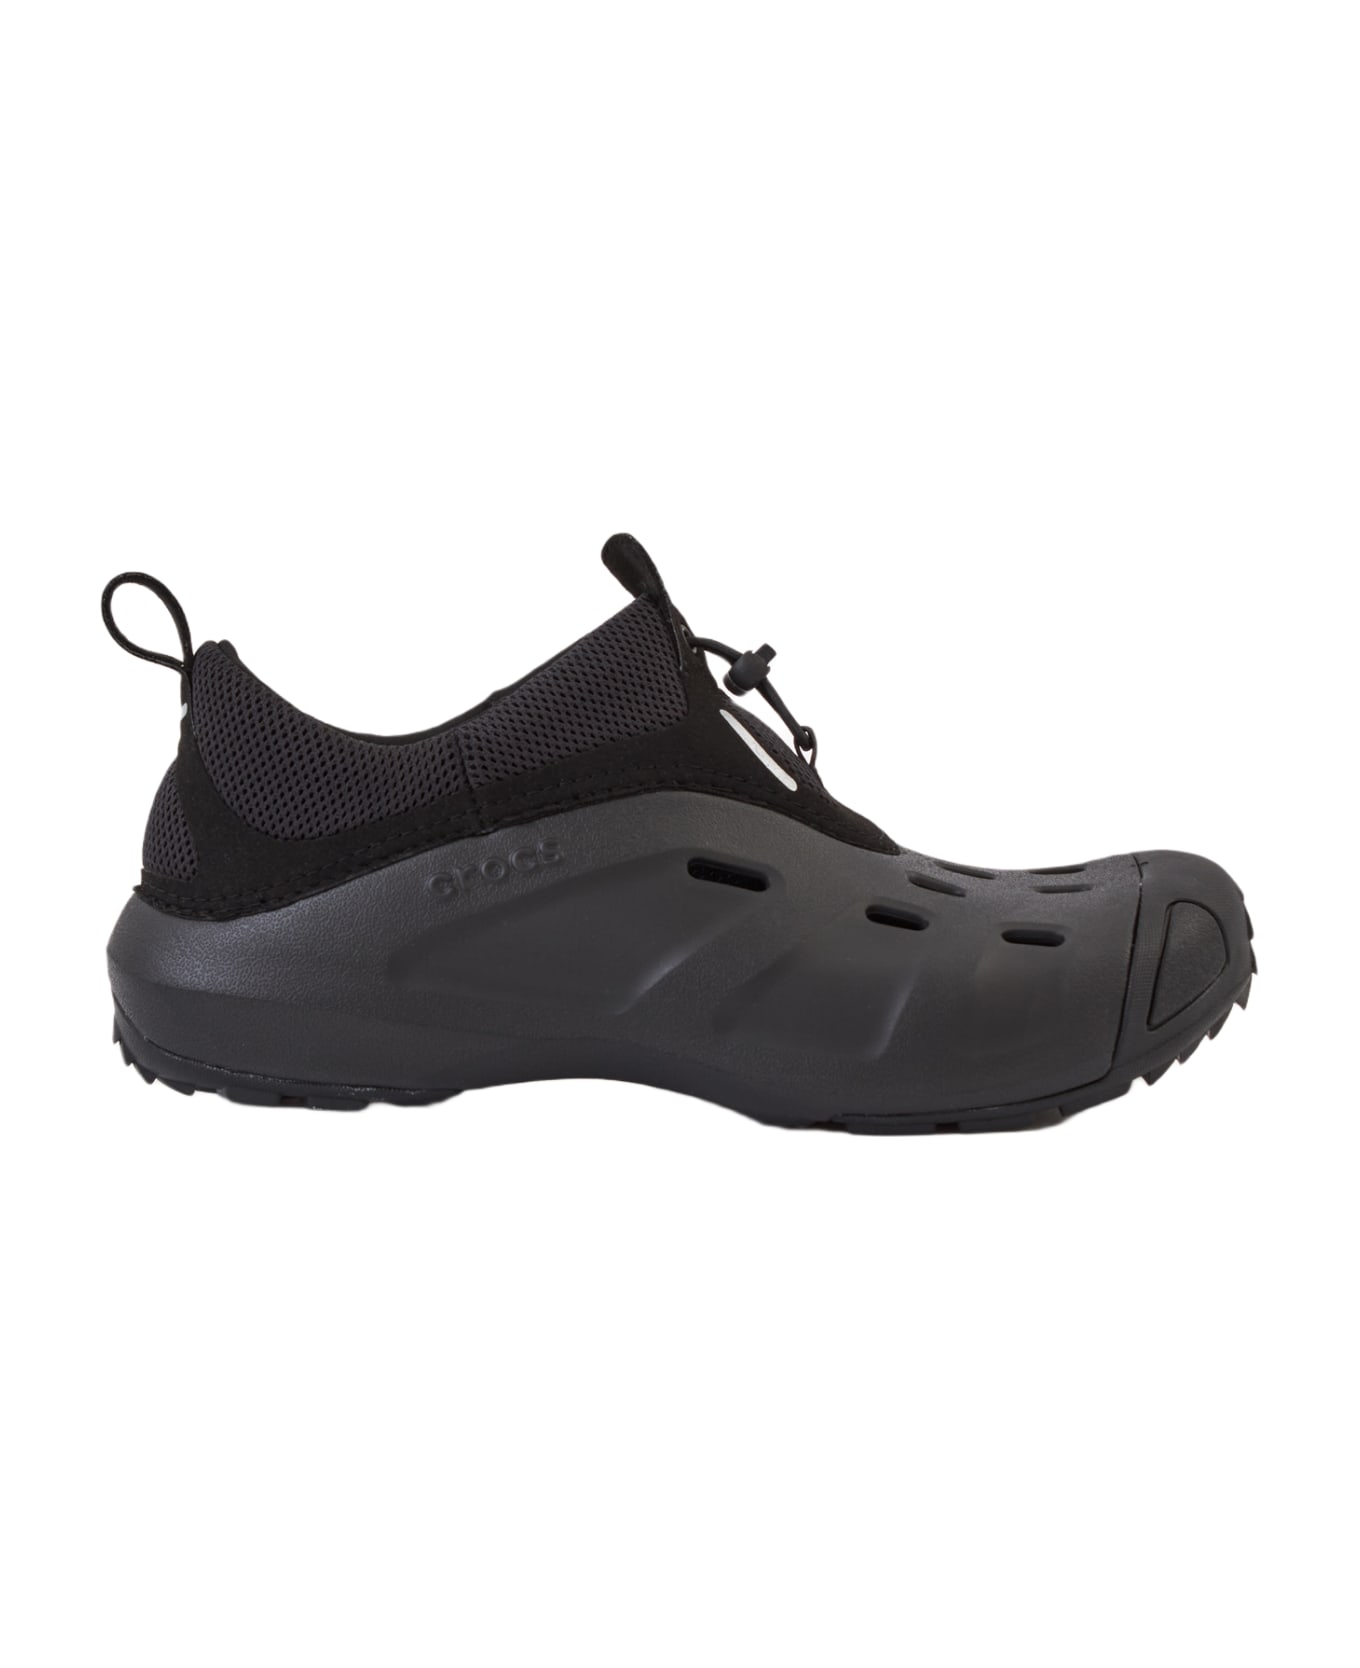 Crocs Quick Trail Low Shoes - black